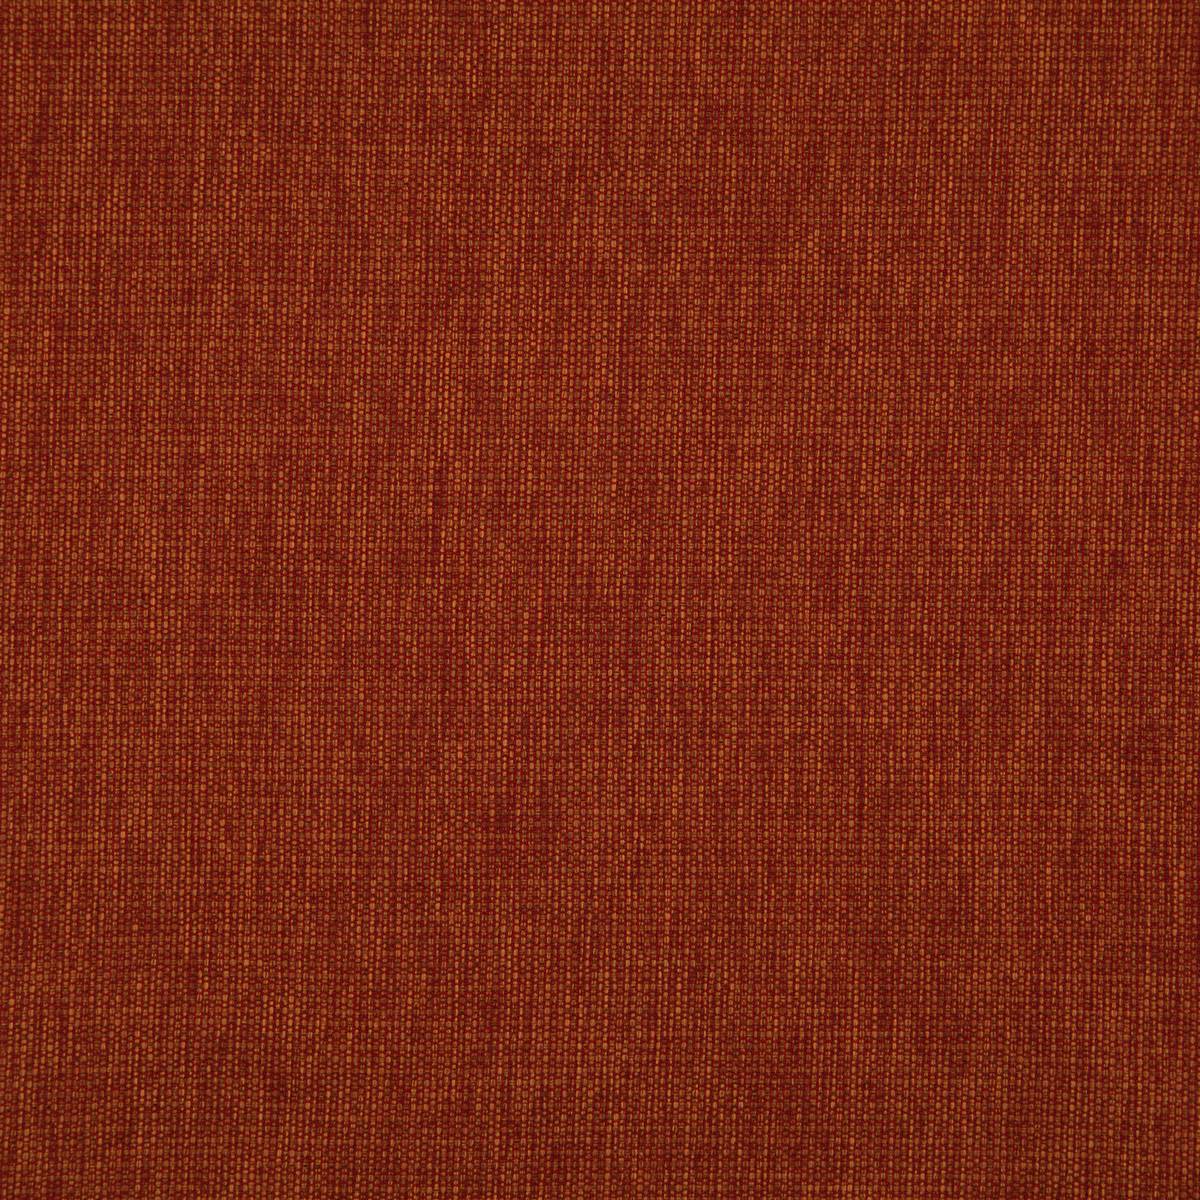 Penzance Lava Fabric by Prestigious Textiles